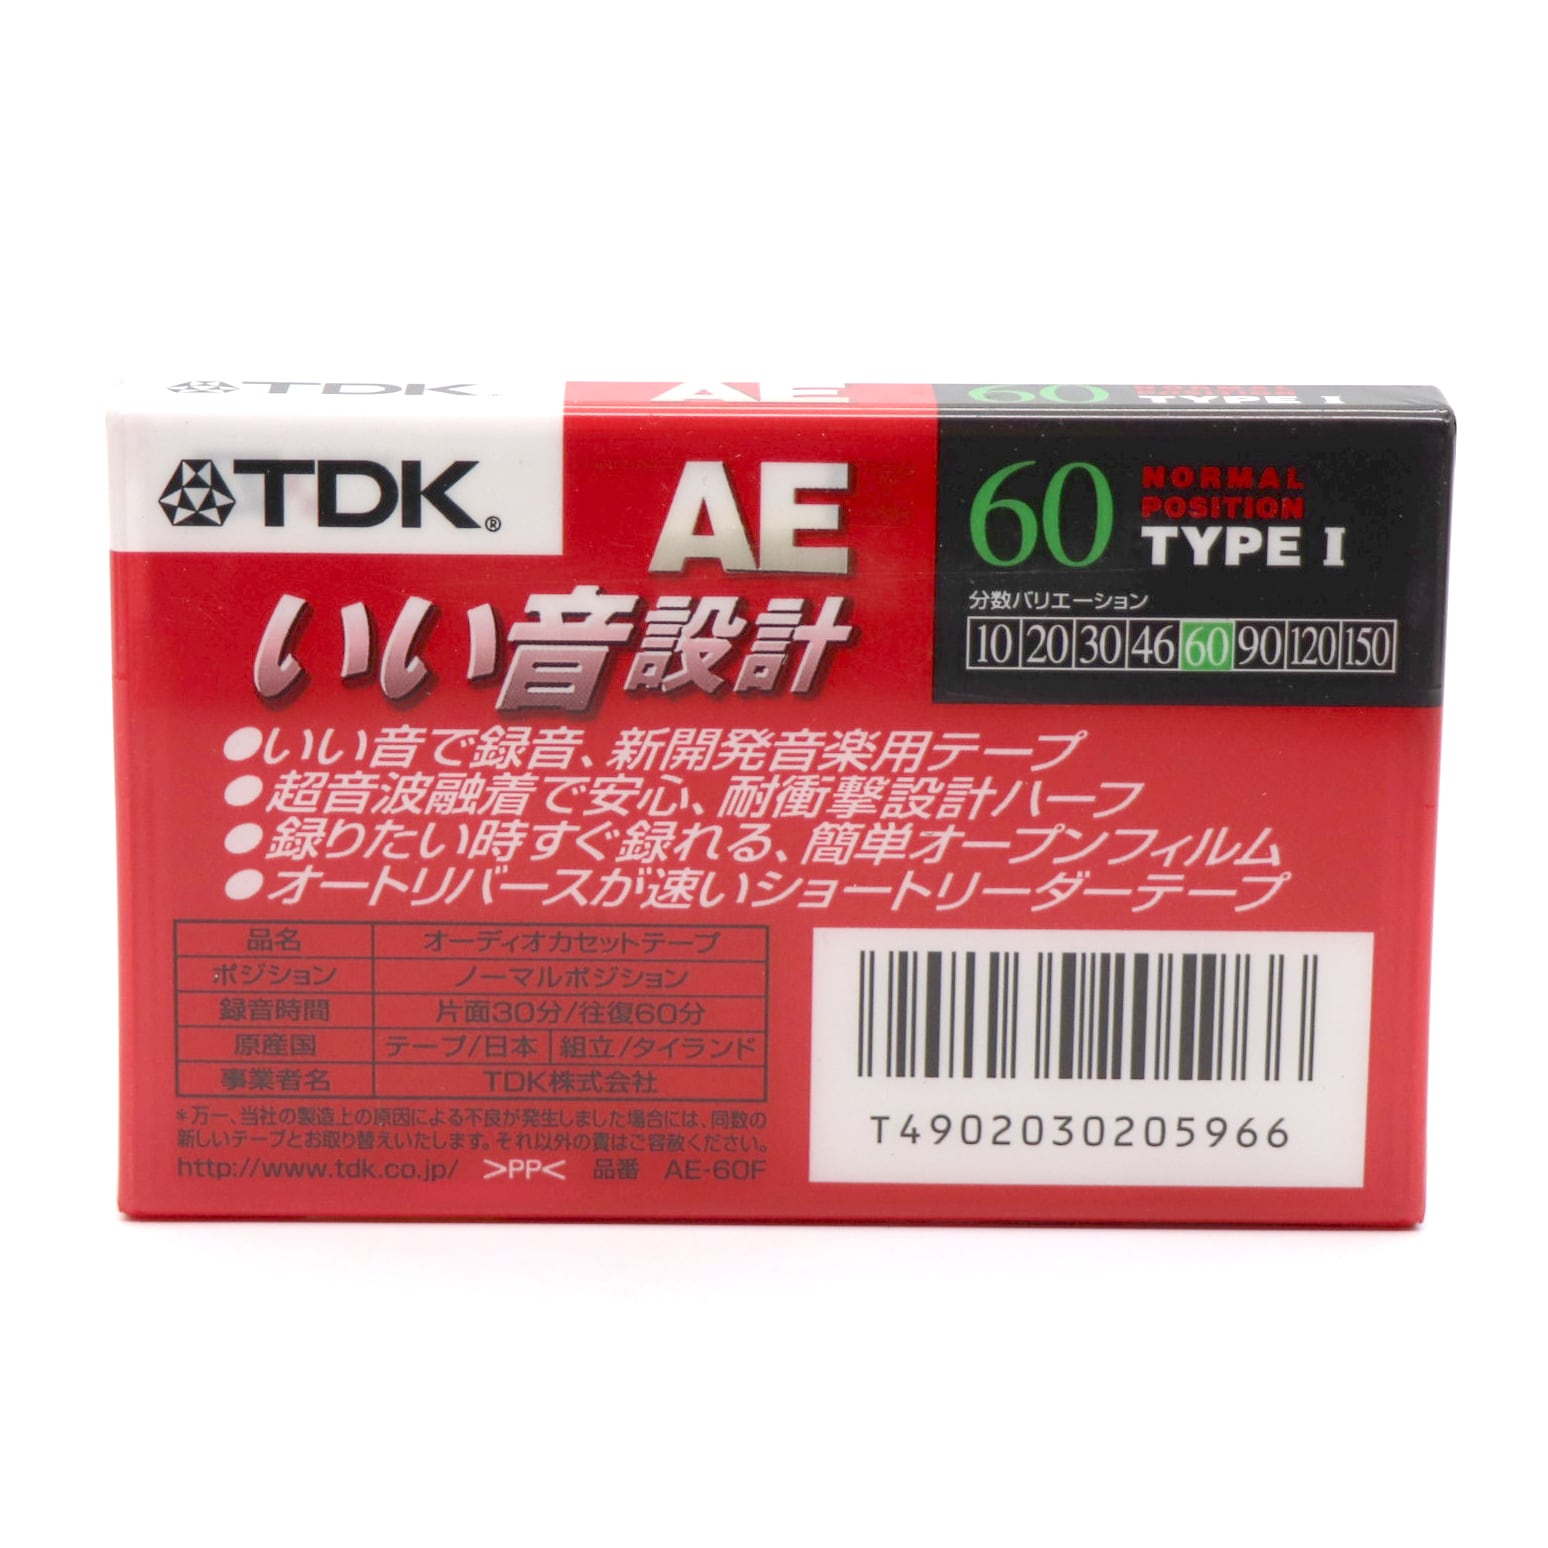 TDK・カセットテープ・16本セット・No.230119-14・梱包サイズ60 ...